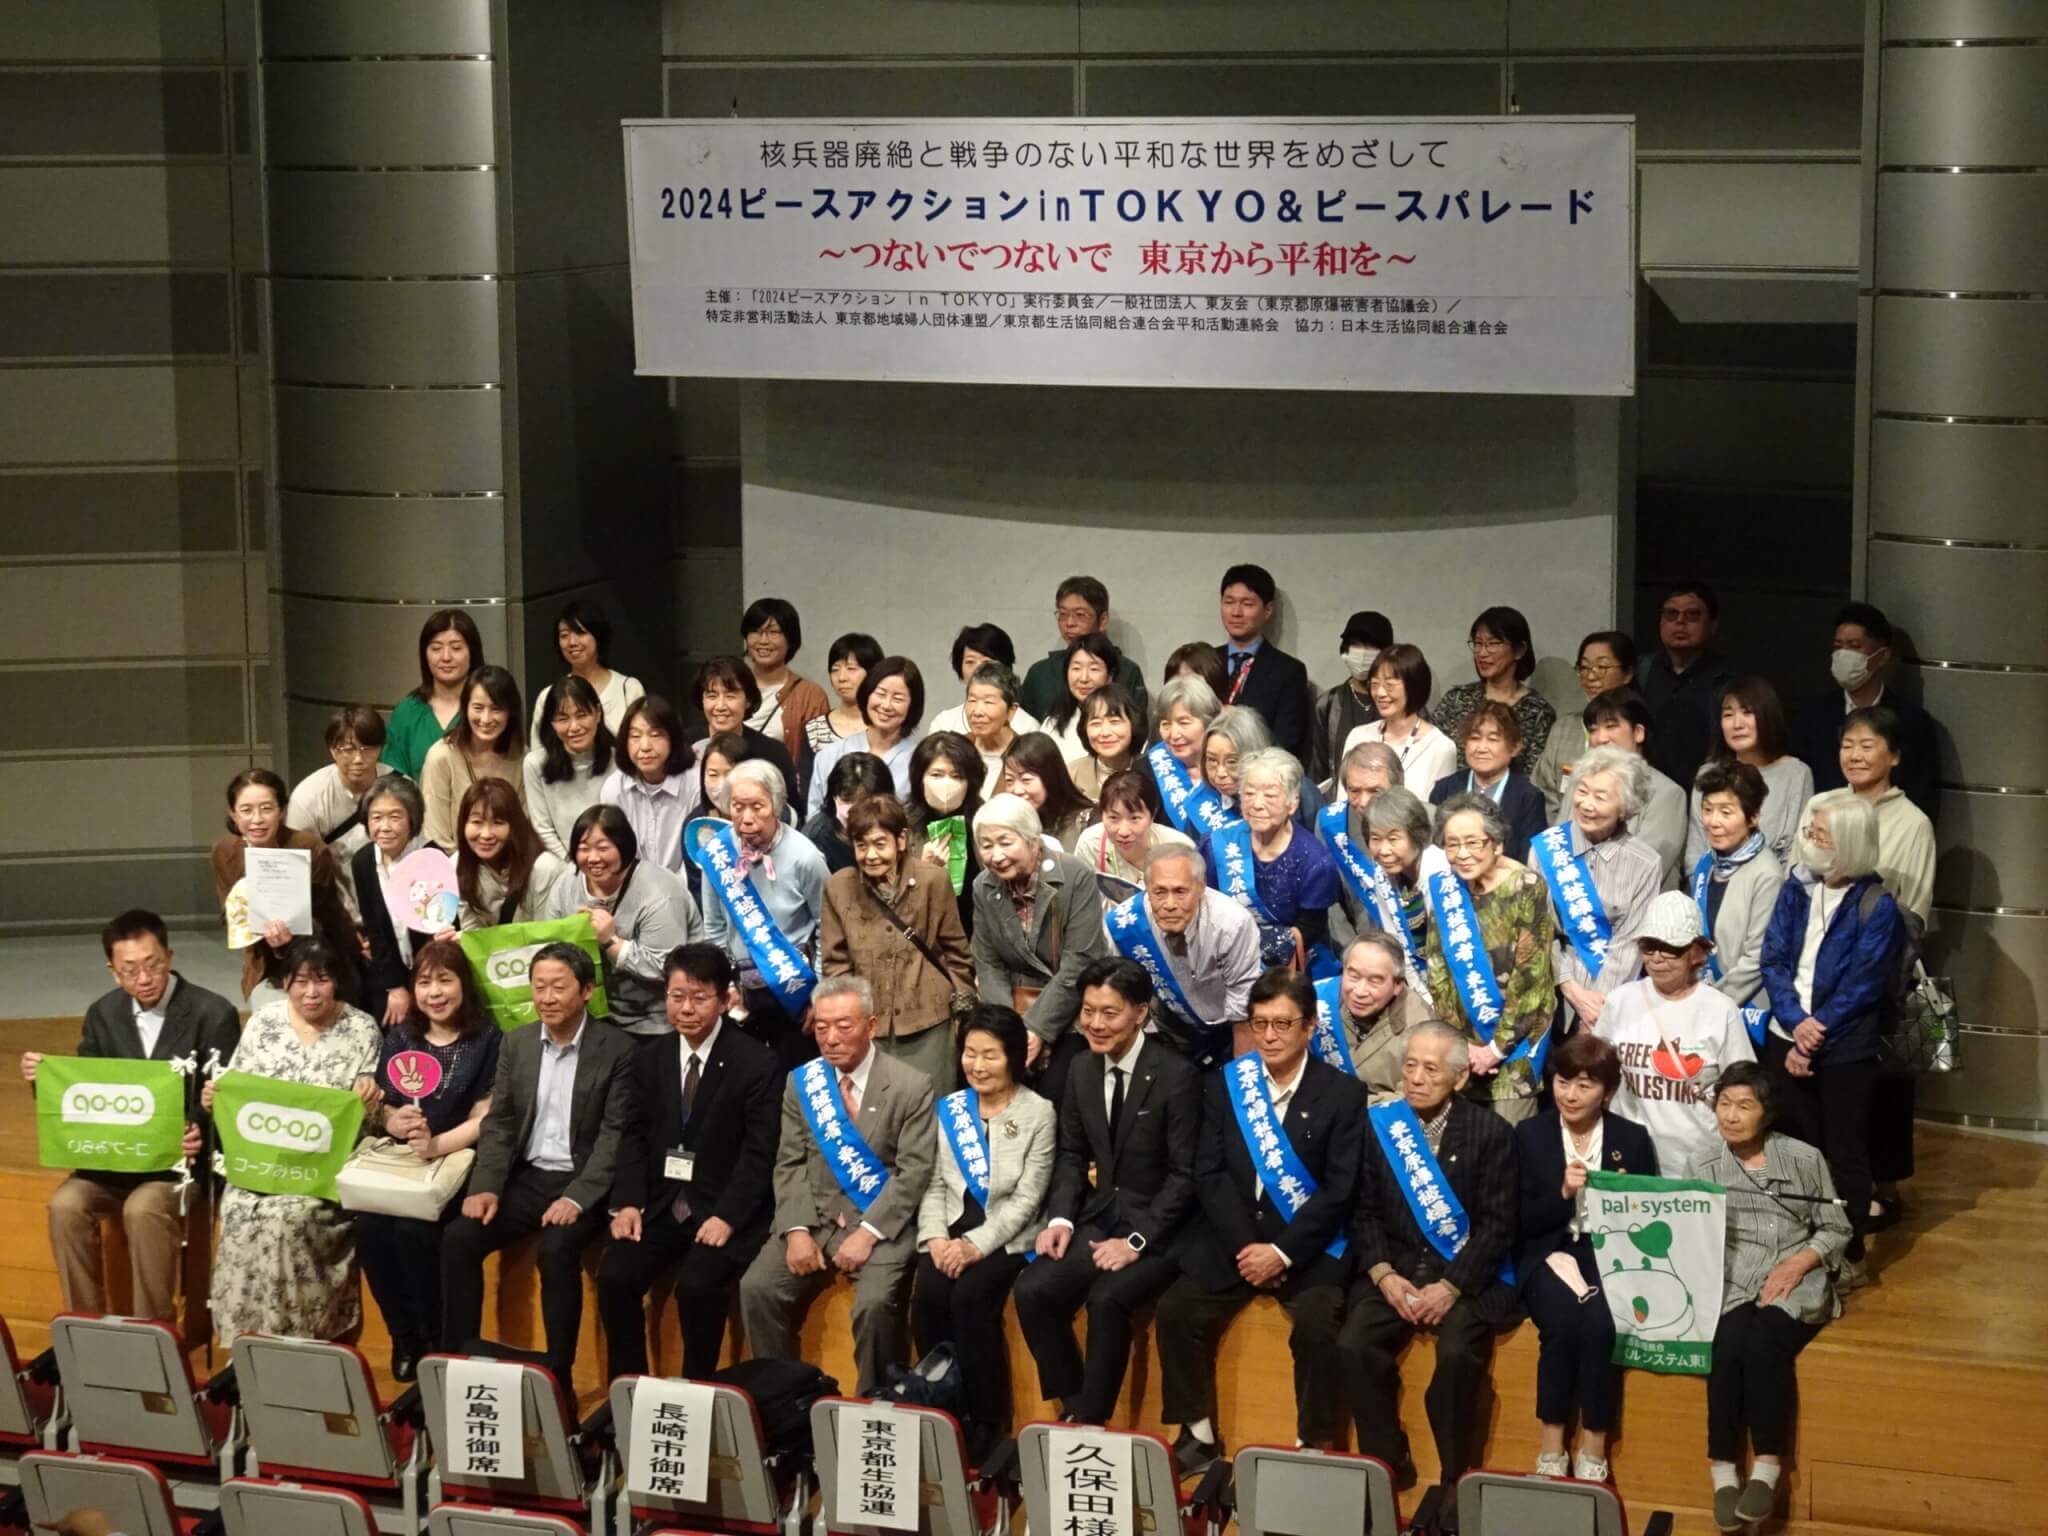 核廃絶の思いを東京から世界へ！ピースアクション in TOKYO2024